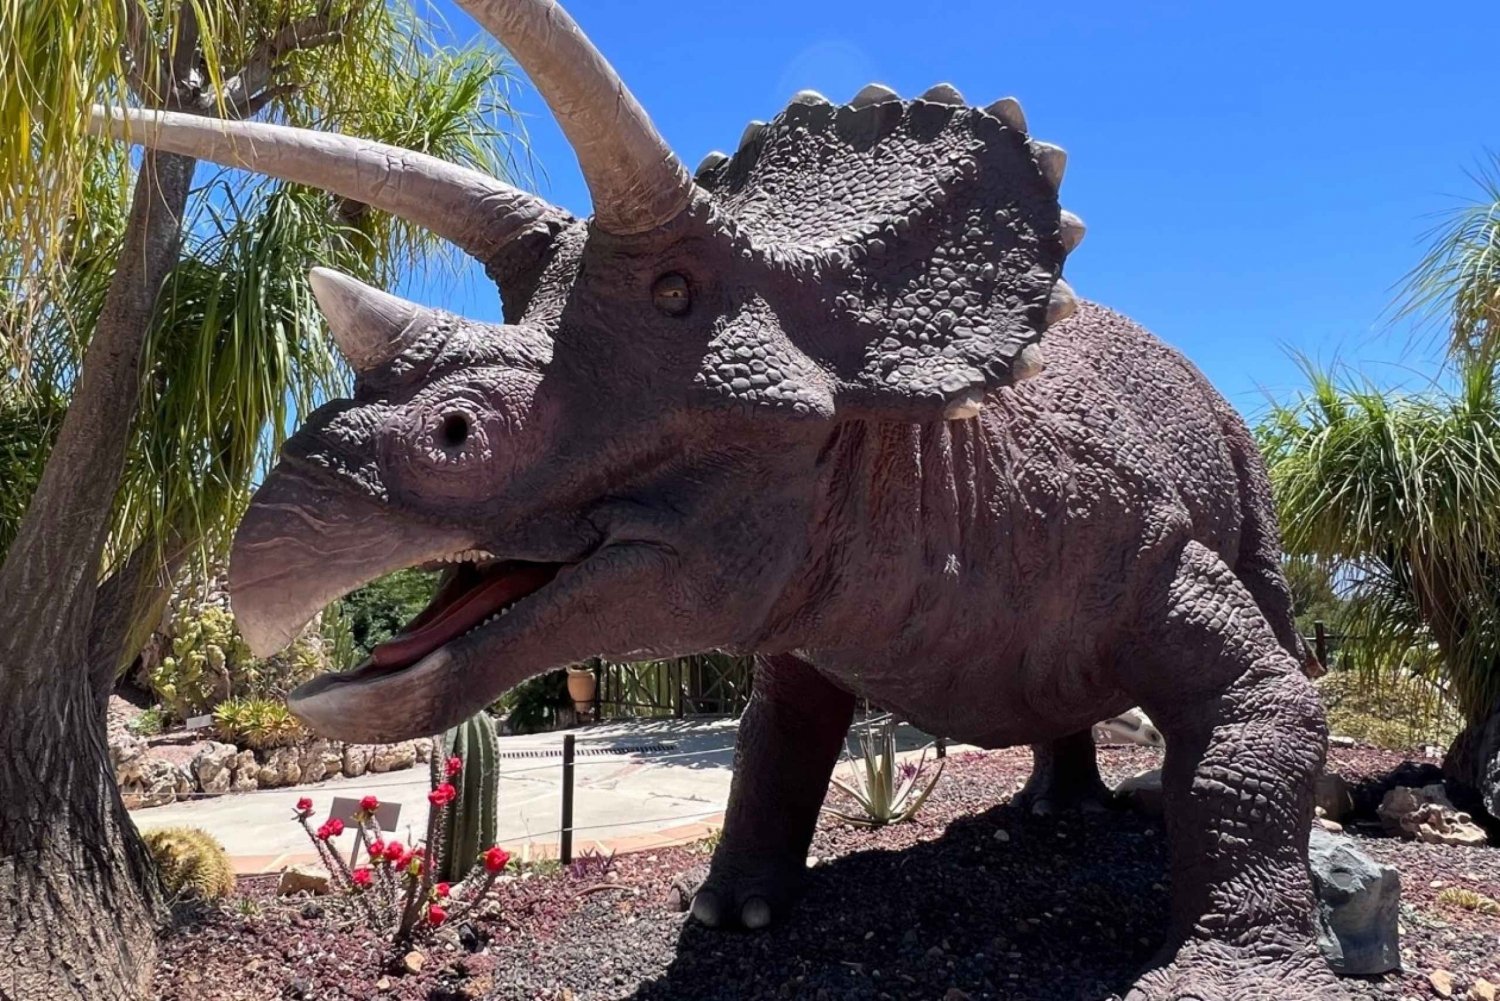 Costa Blanca: DinoPark Algar Pääsylippu